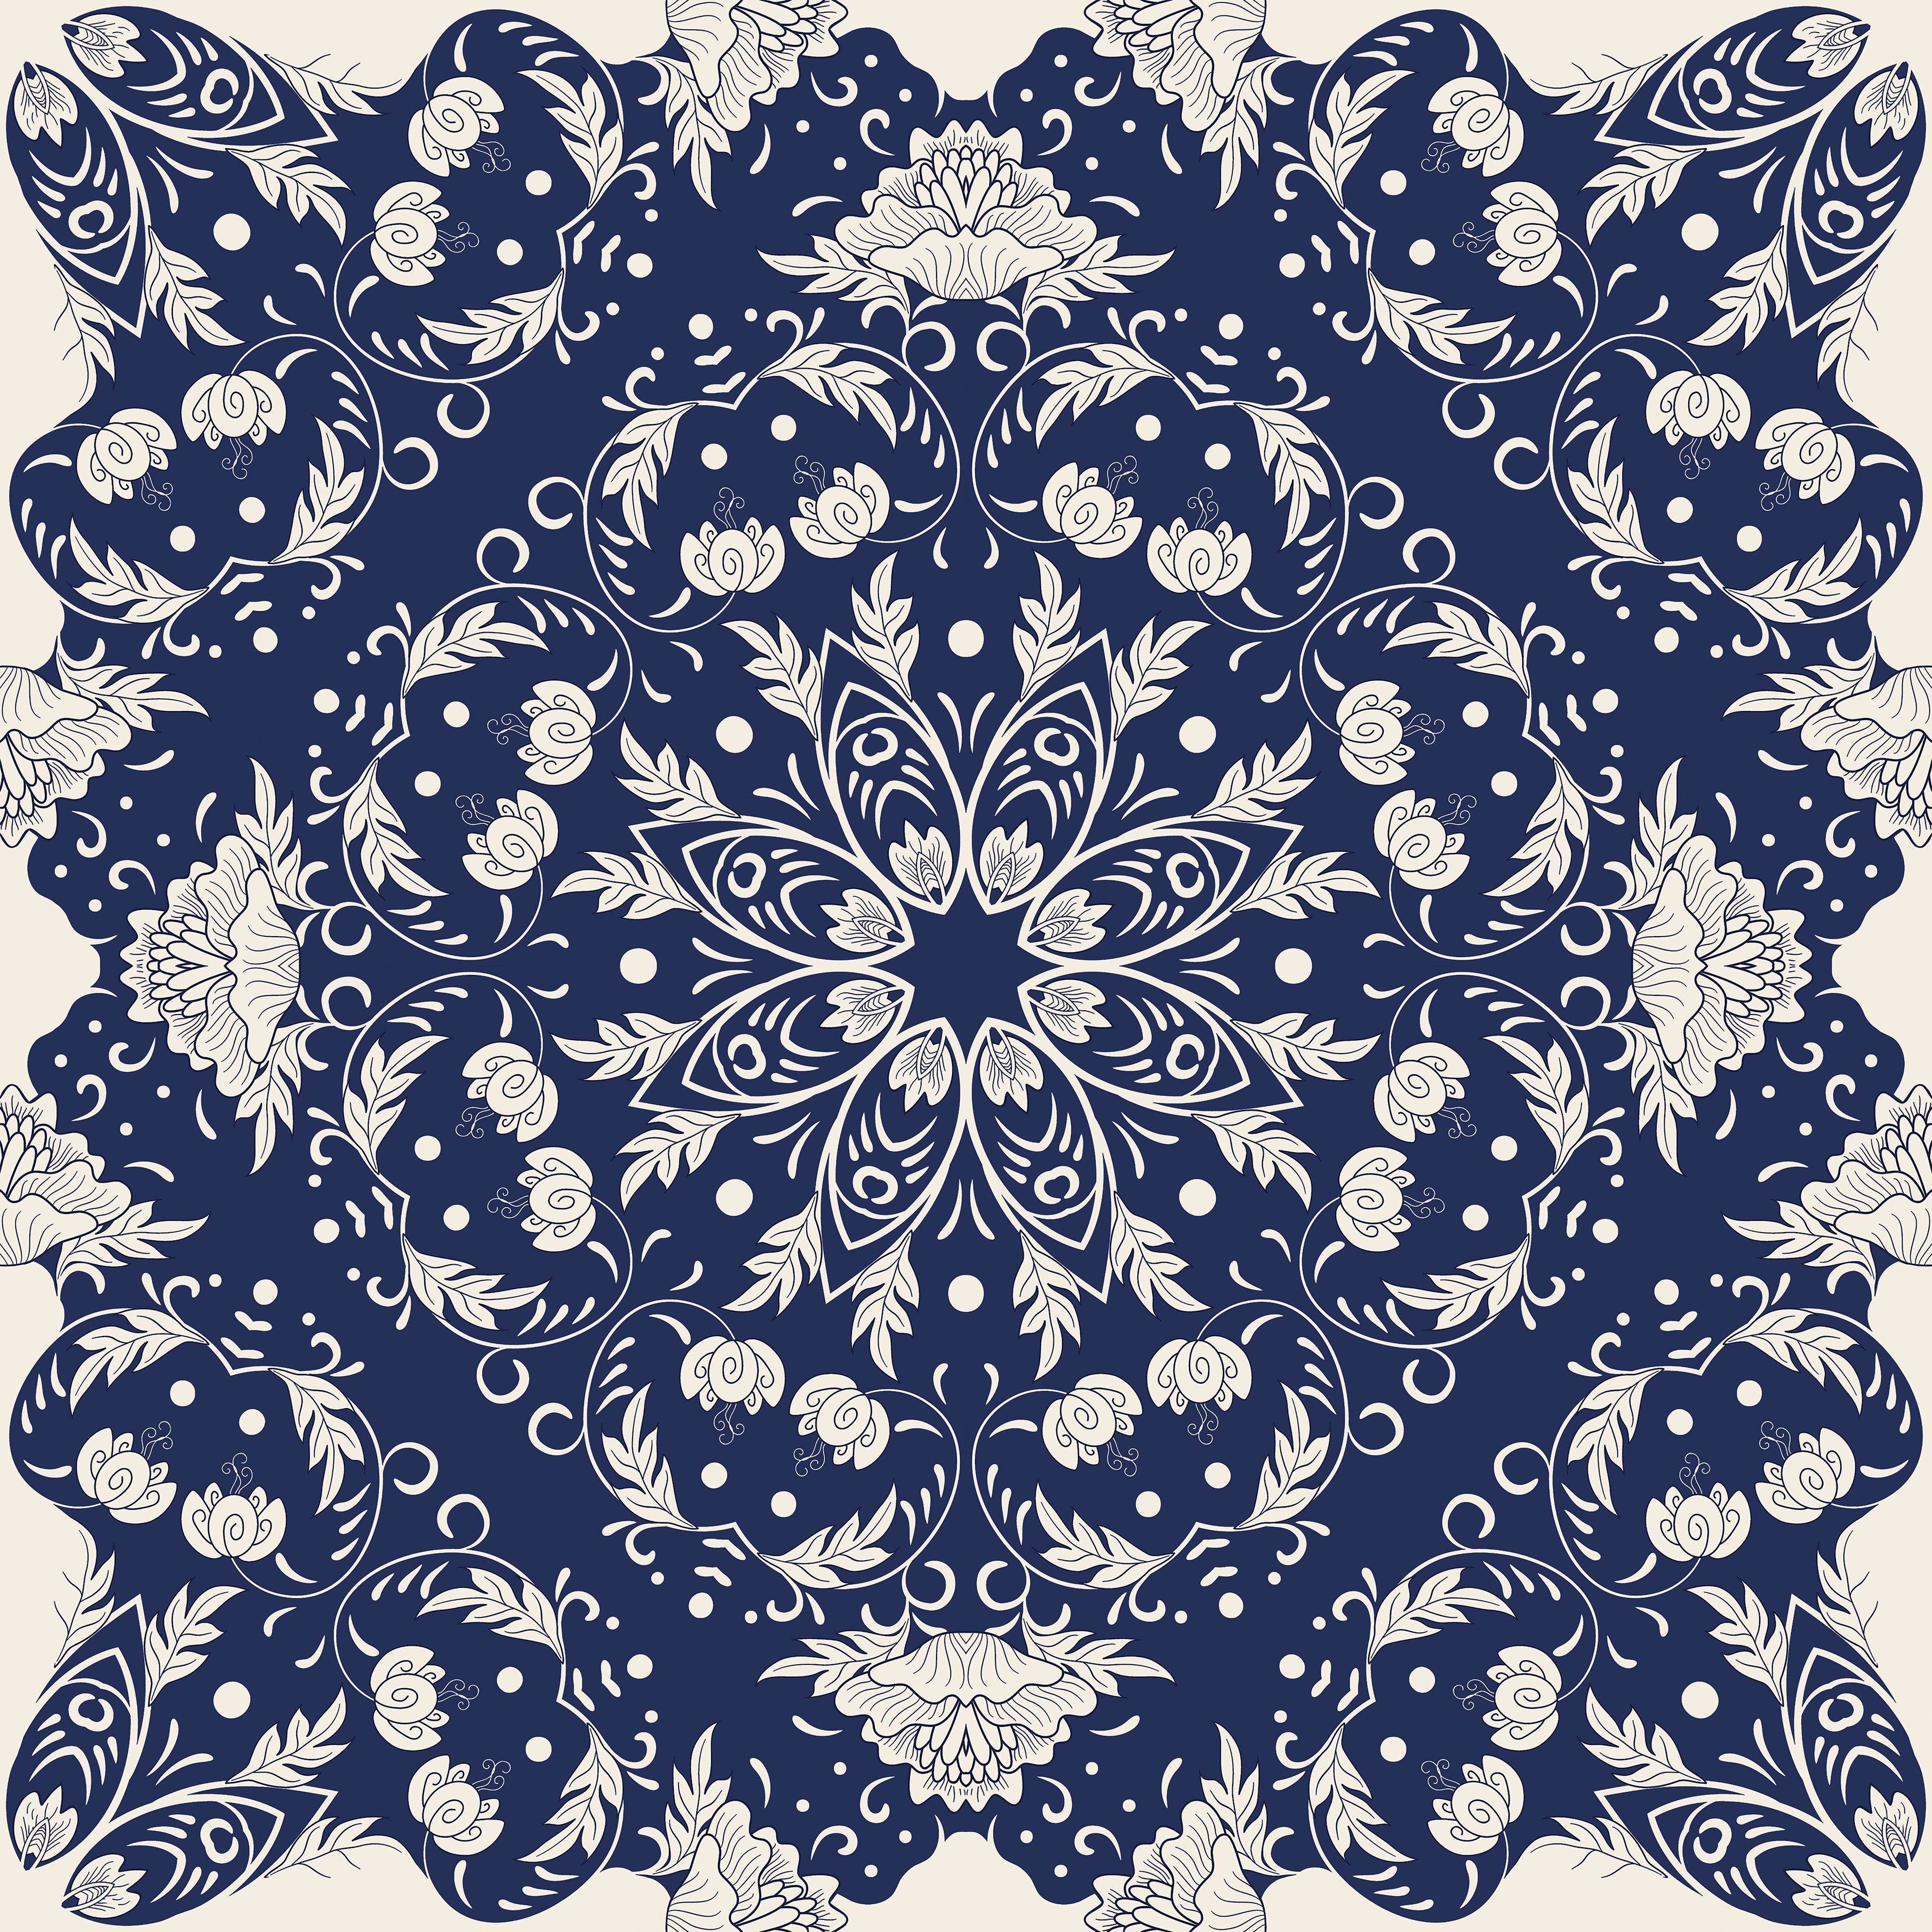 Lenço Mandala Azulejo em cetim poliester